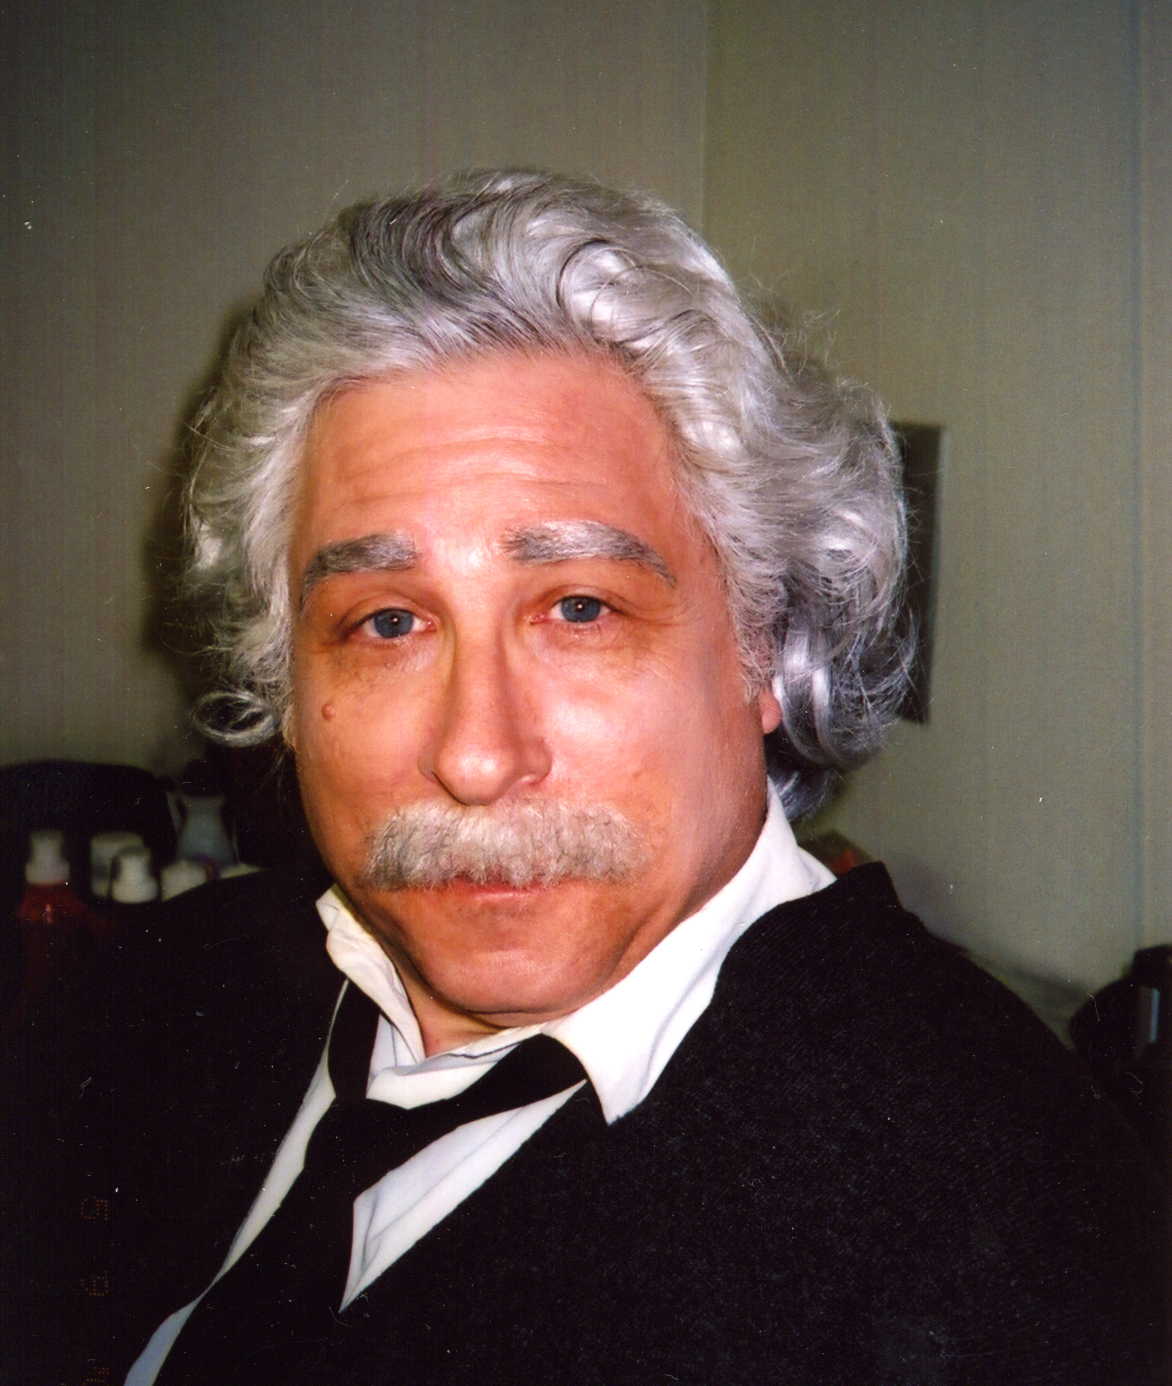 Smokey Miles as Albert Einstein